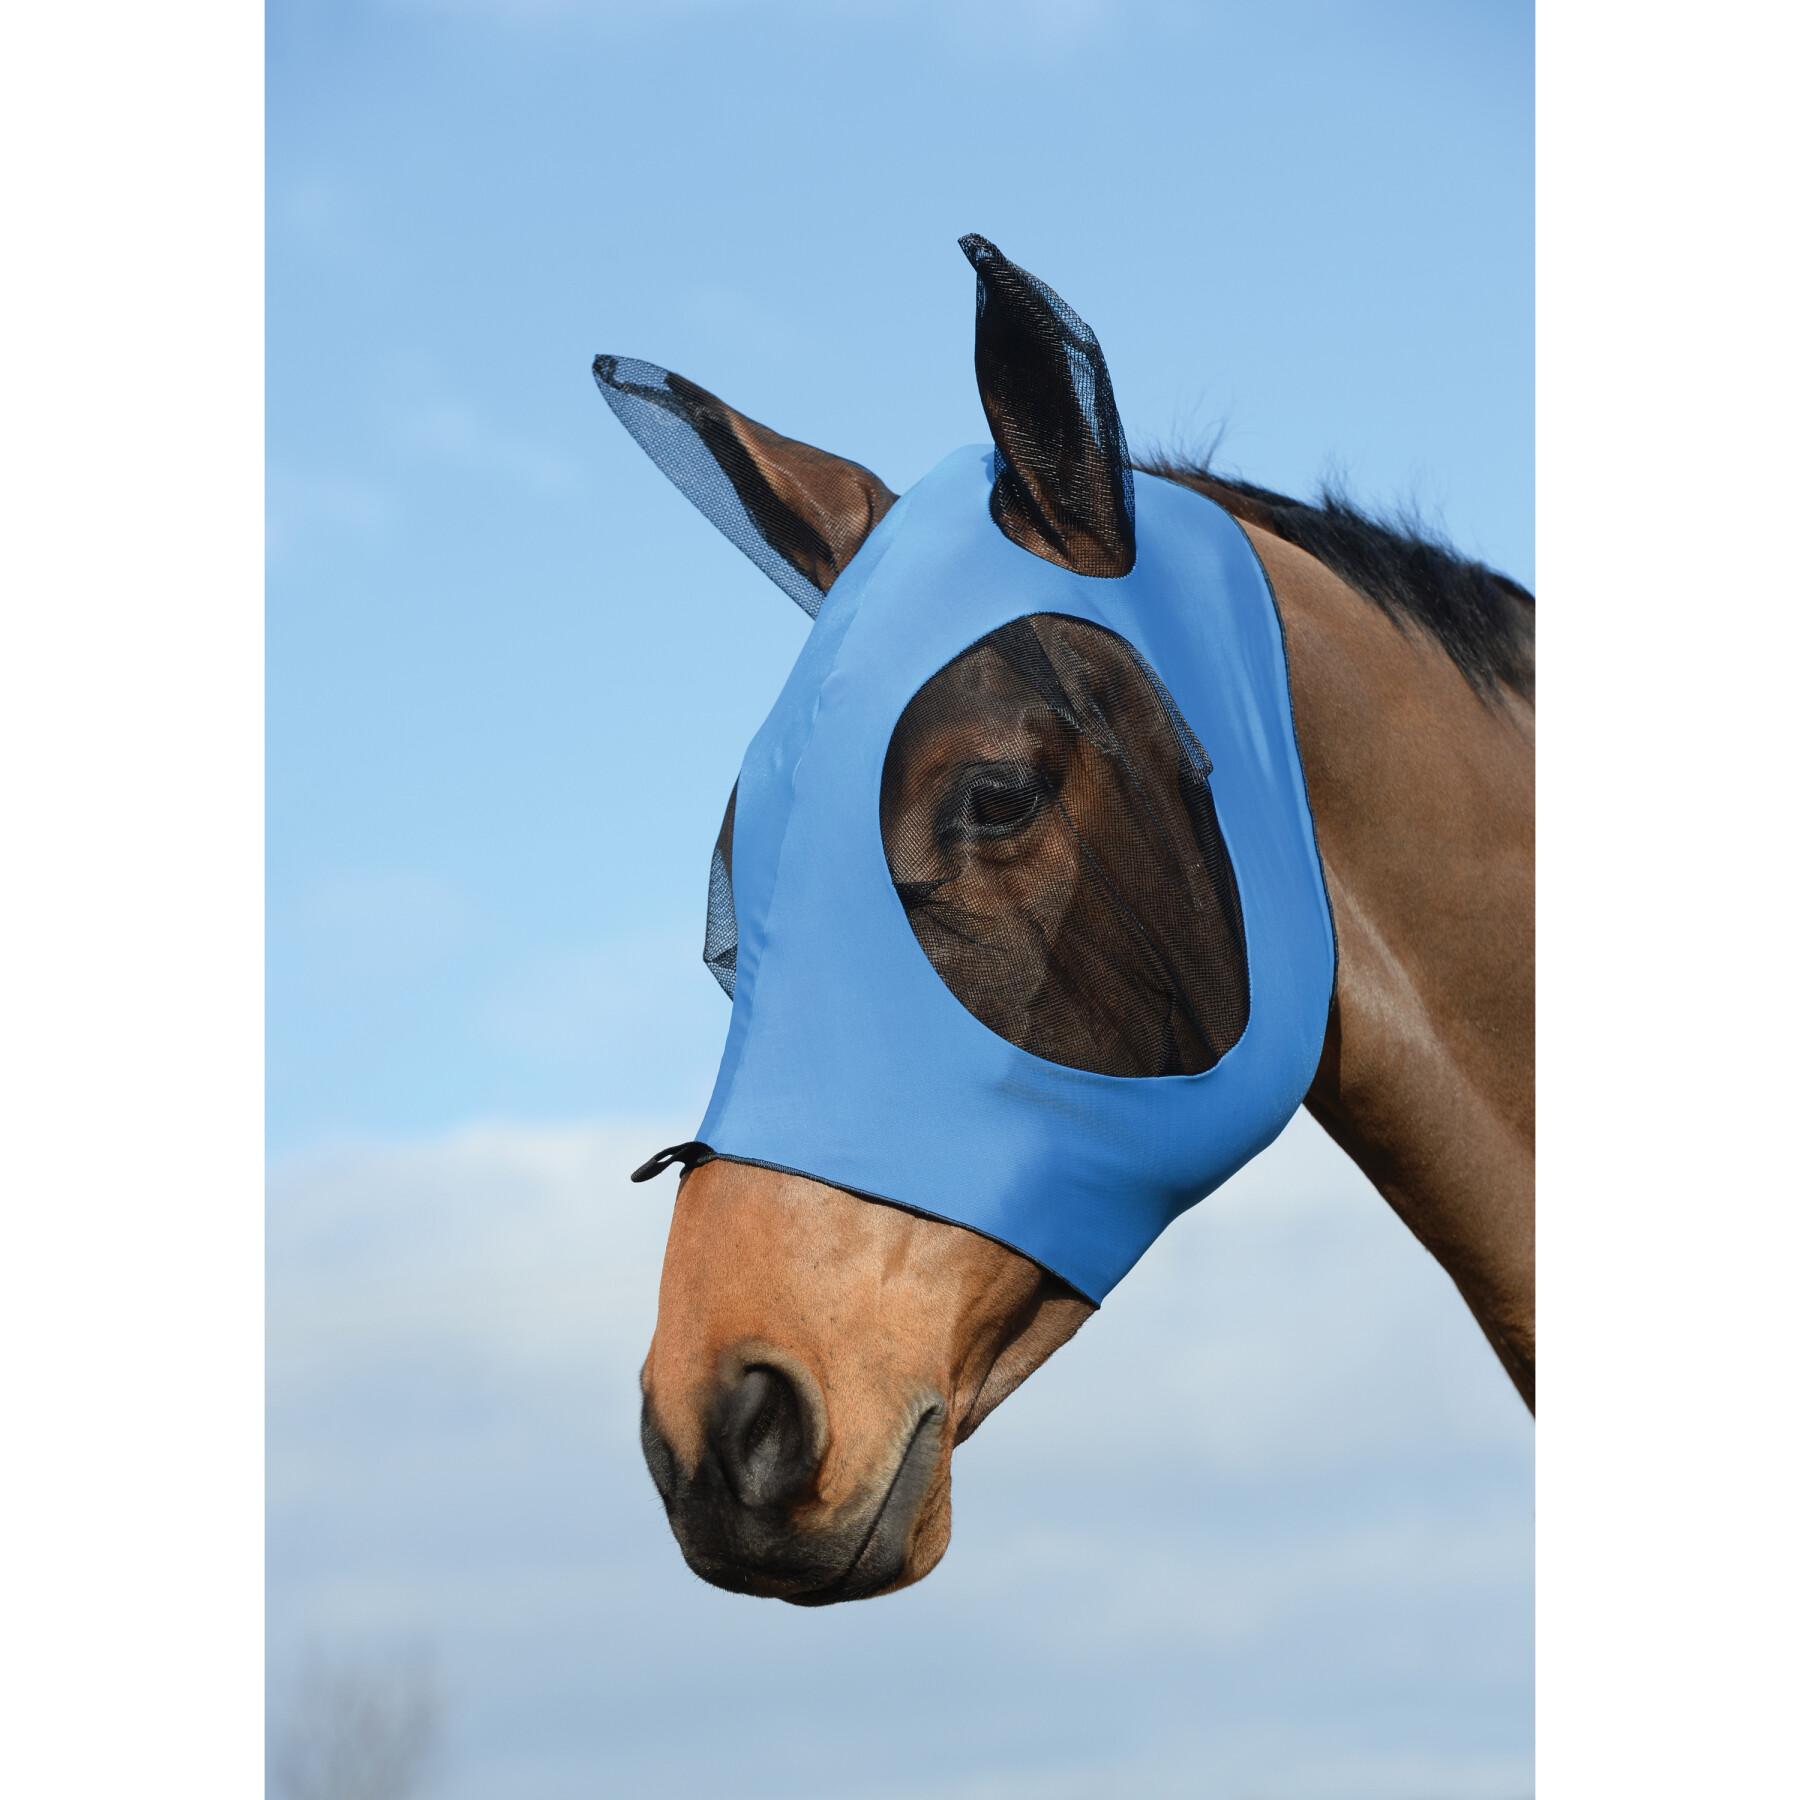 Stretch vliegenmasker voor paardenogen en -oren Weatherbeeta Deluxe